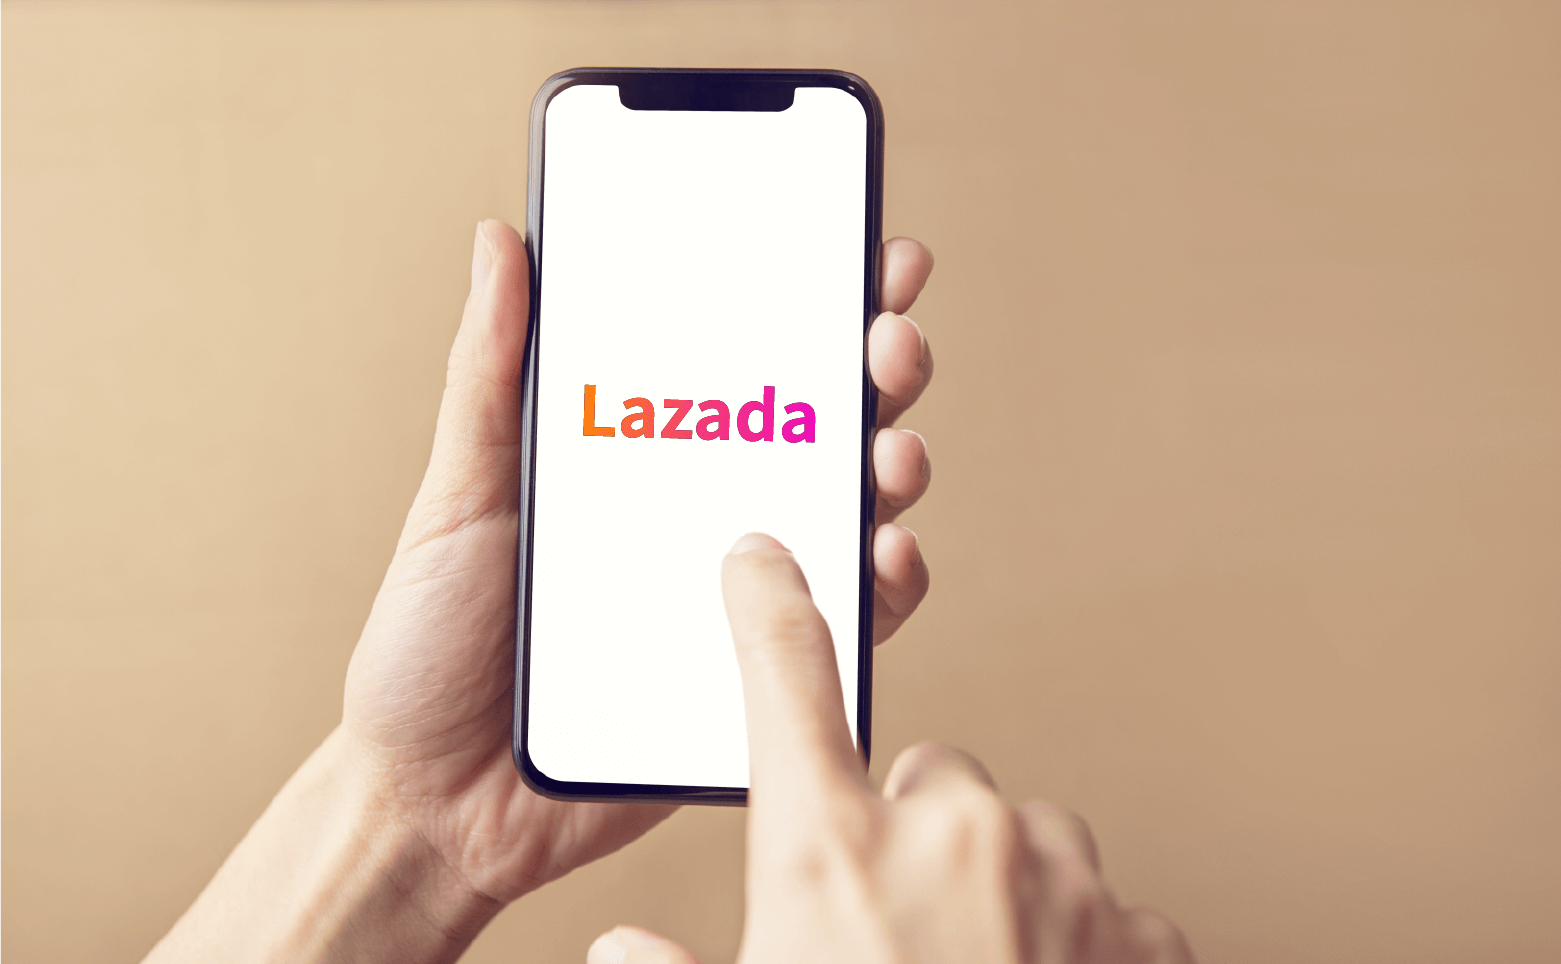 了解Lazada本土店铺的开店技巧新标题：掌握Lazada本土店铺的开店秘诀